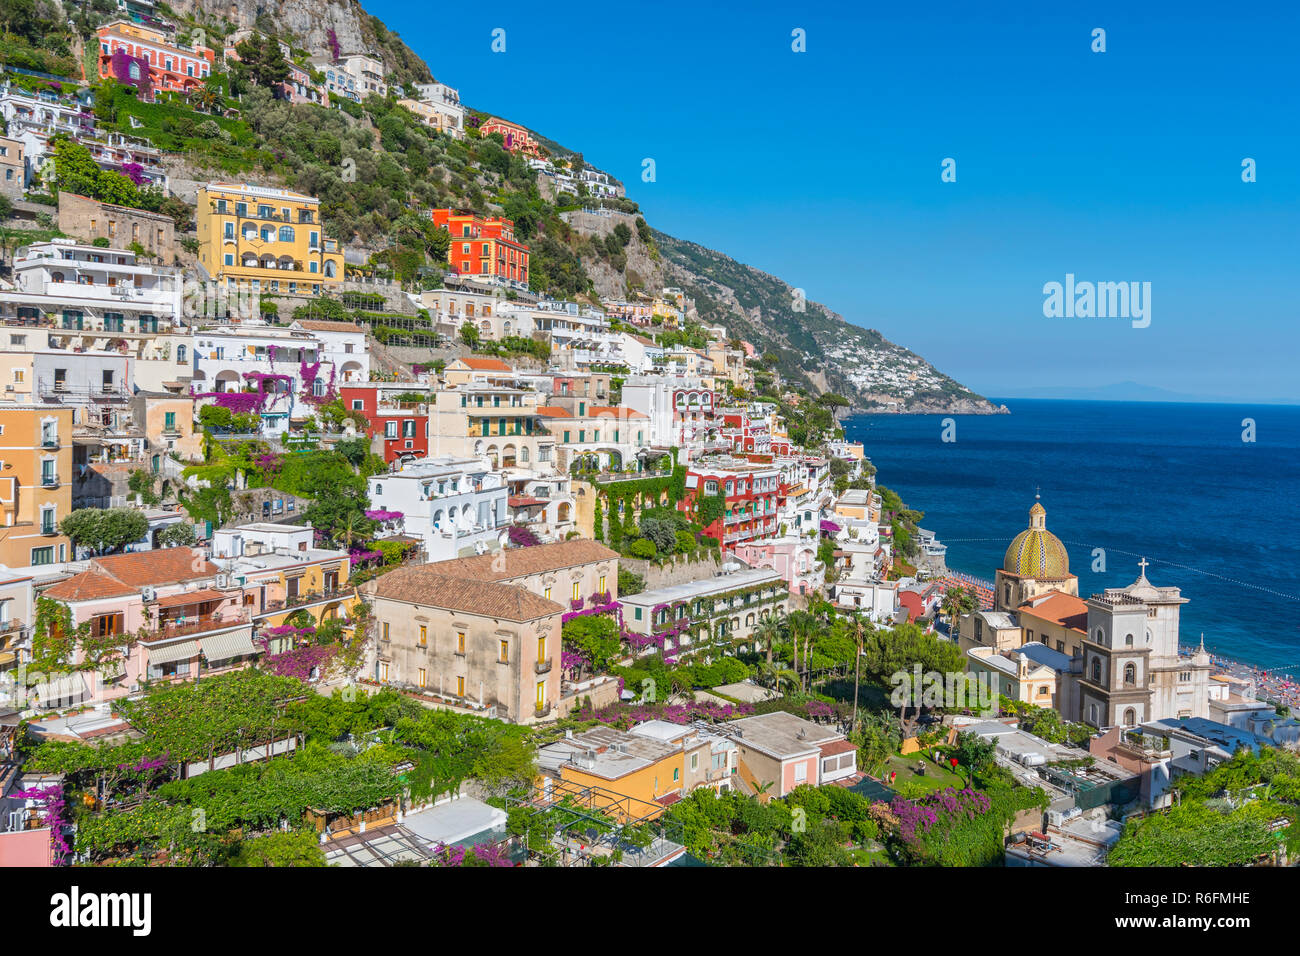 Vue sur Positano, l'un des plus beaux villages touristiques et de la Côte d'Amalfi, Italie Banque D'Images